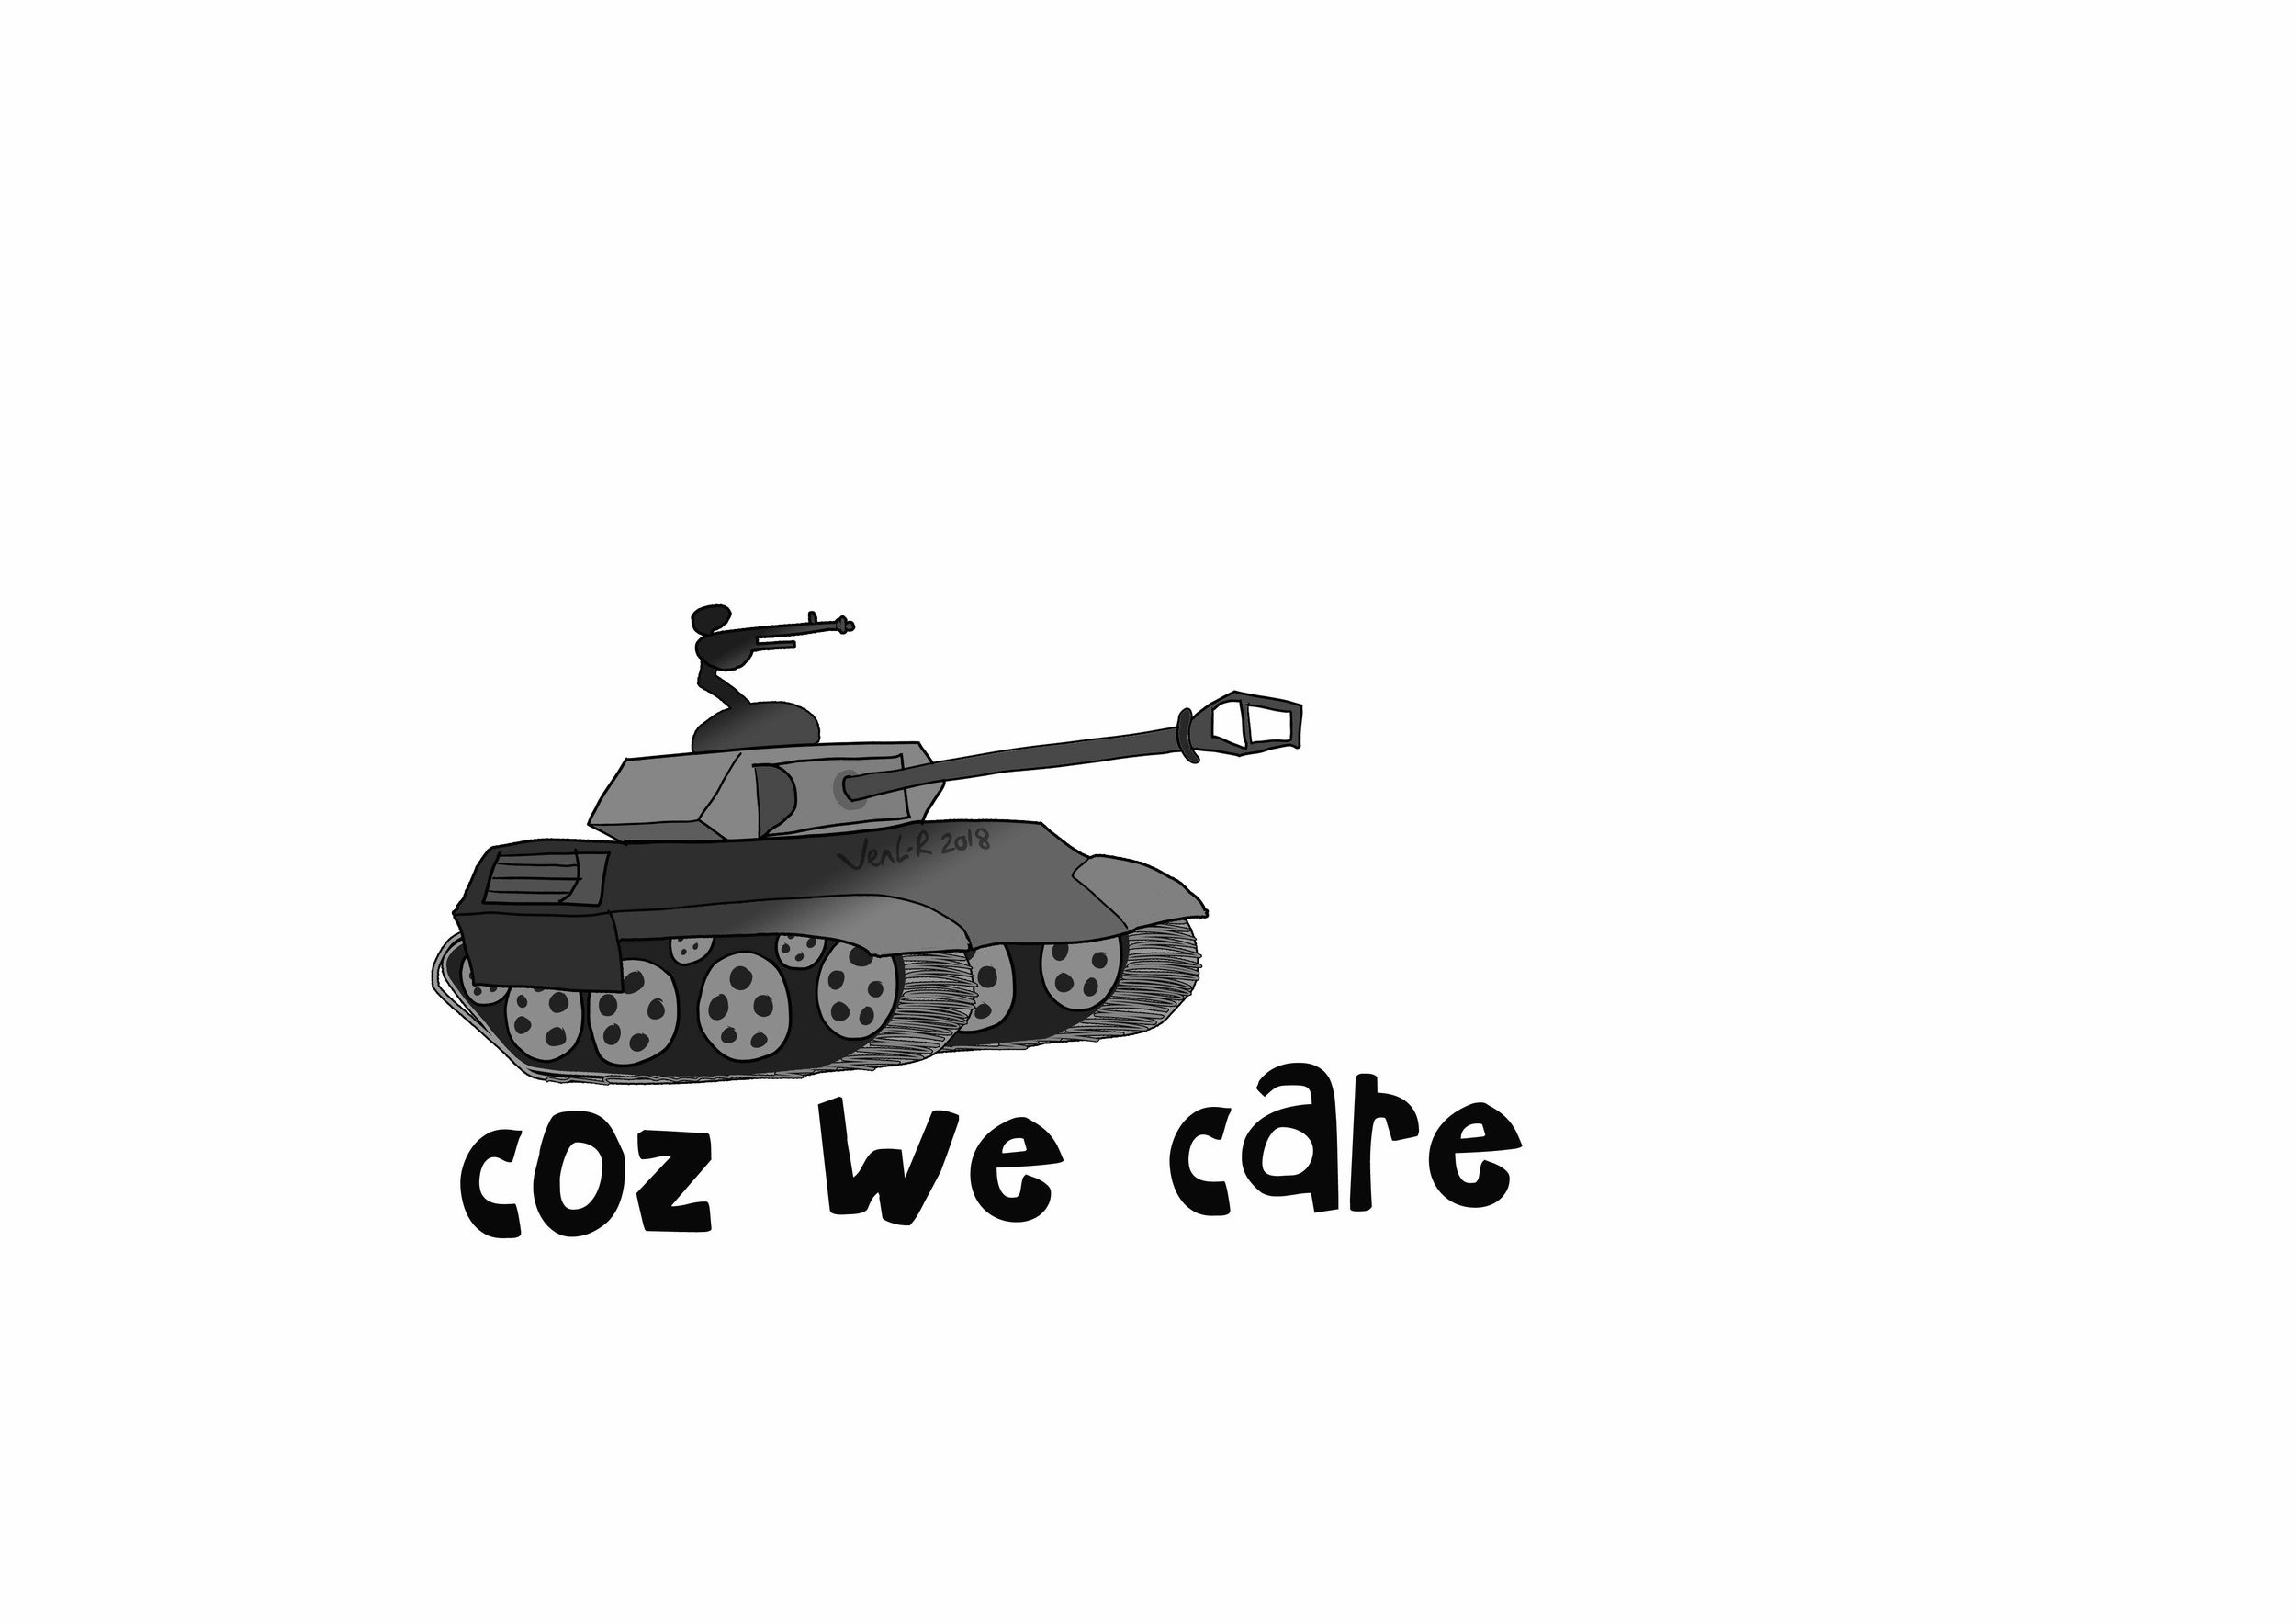 army-tank-care3.jpg